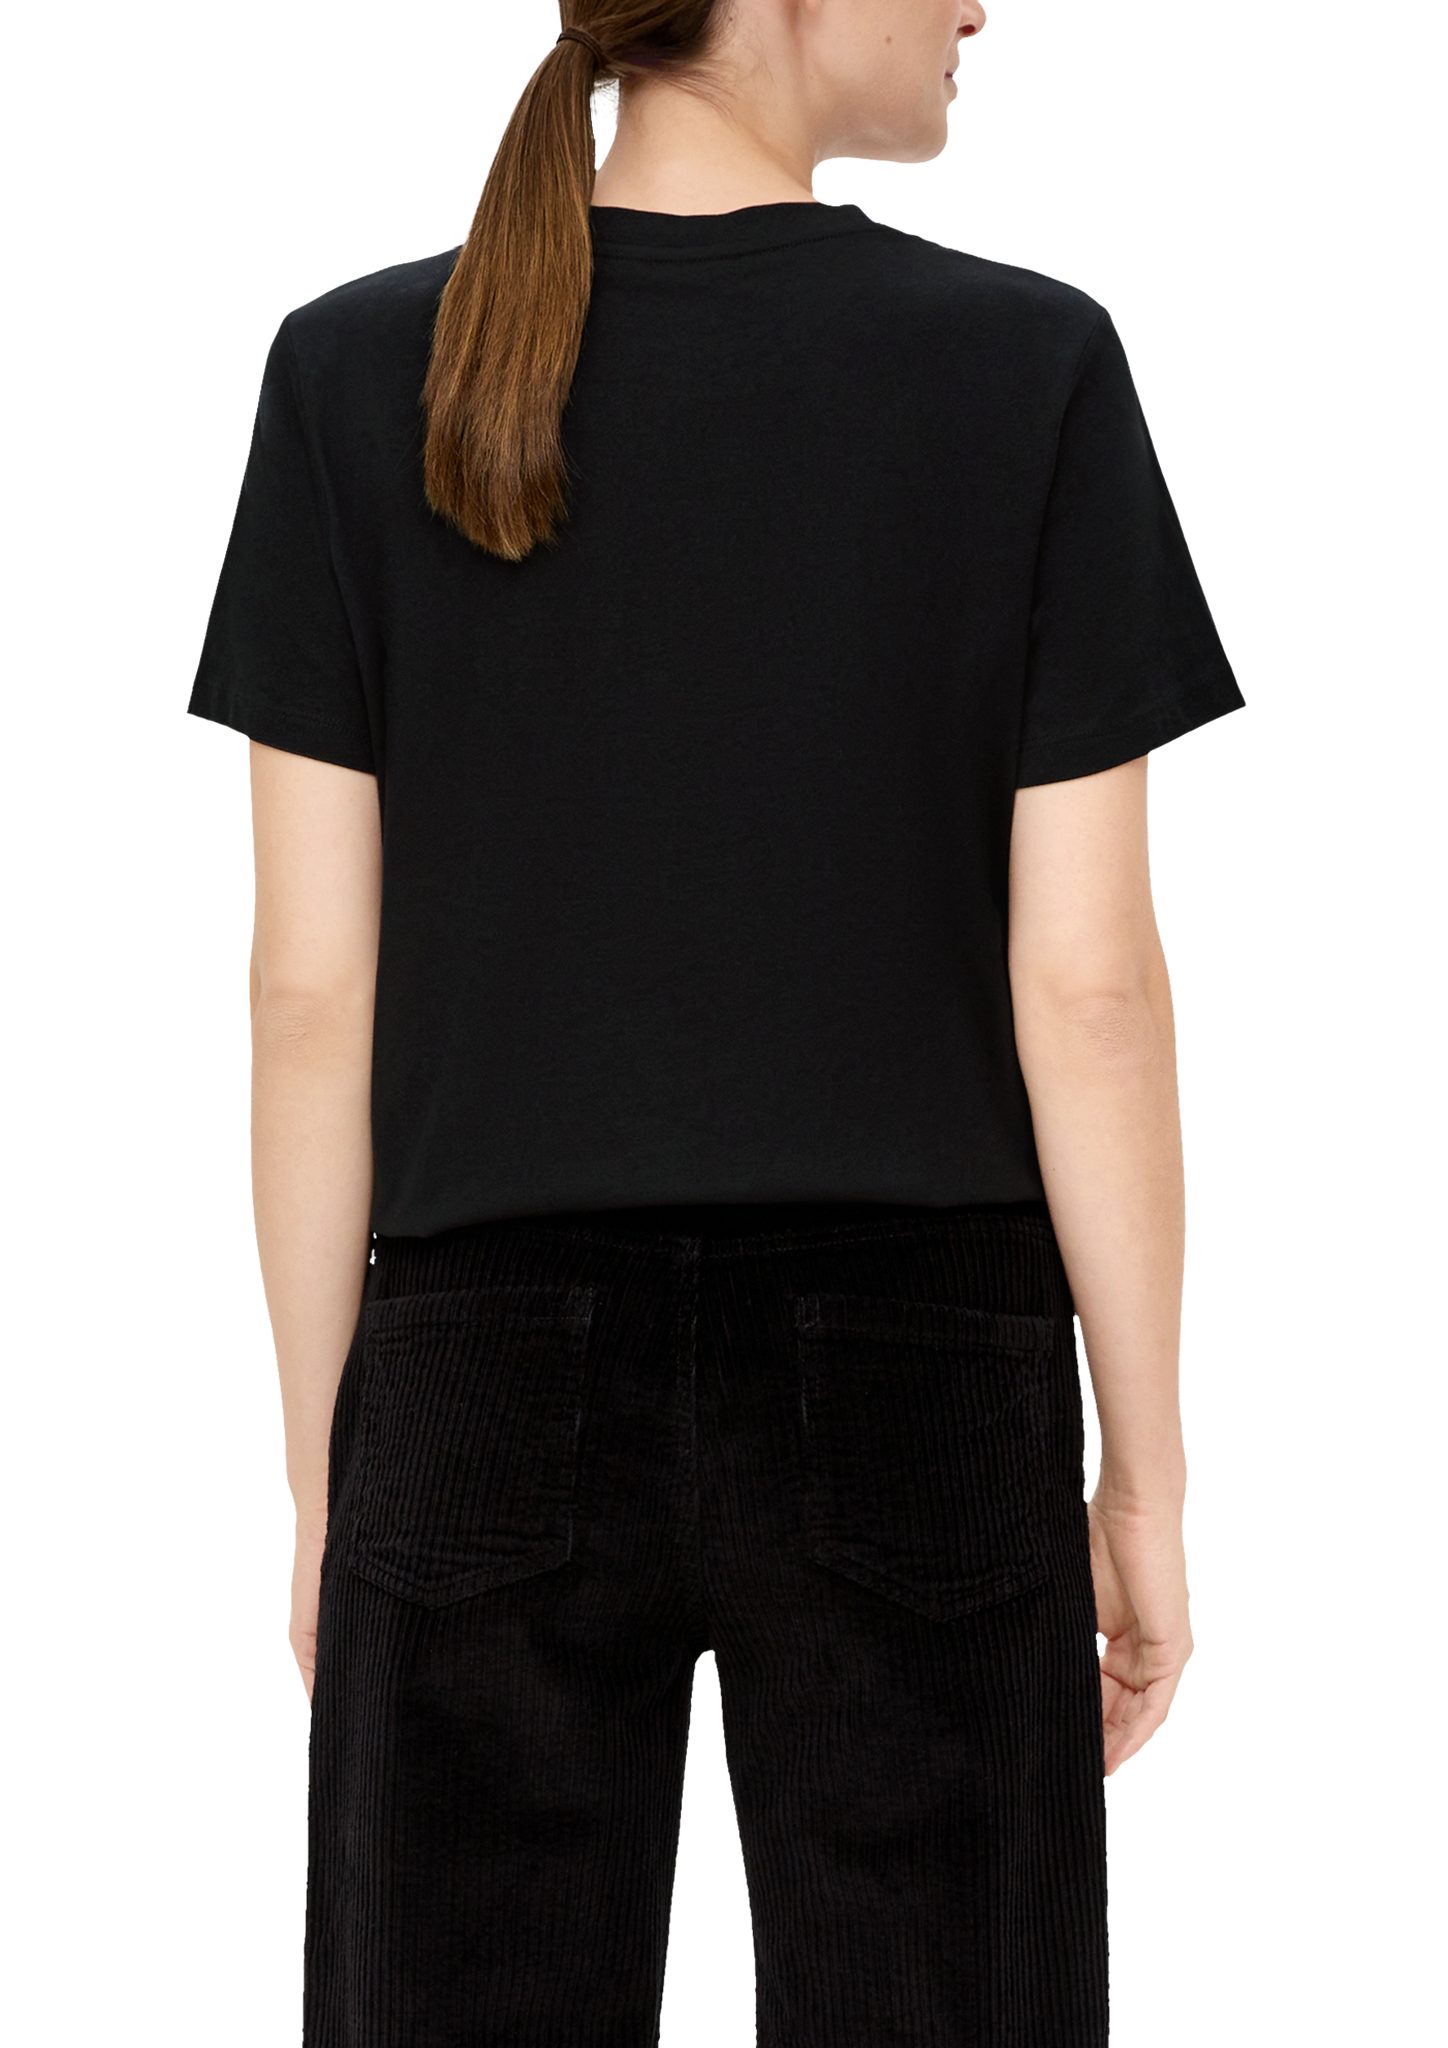 Baumwolle schwarz Kurzarmshirt s.Oliver T-Shirt aus